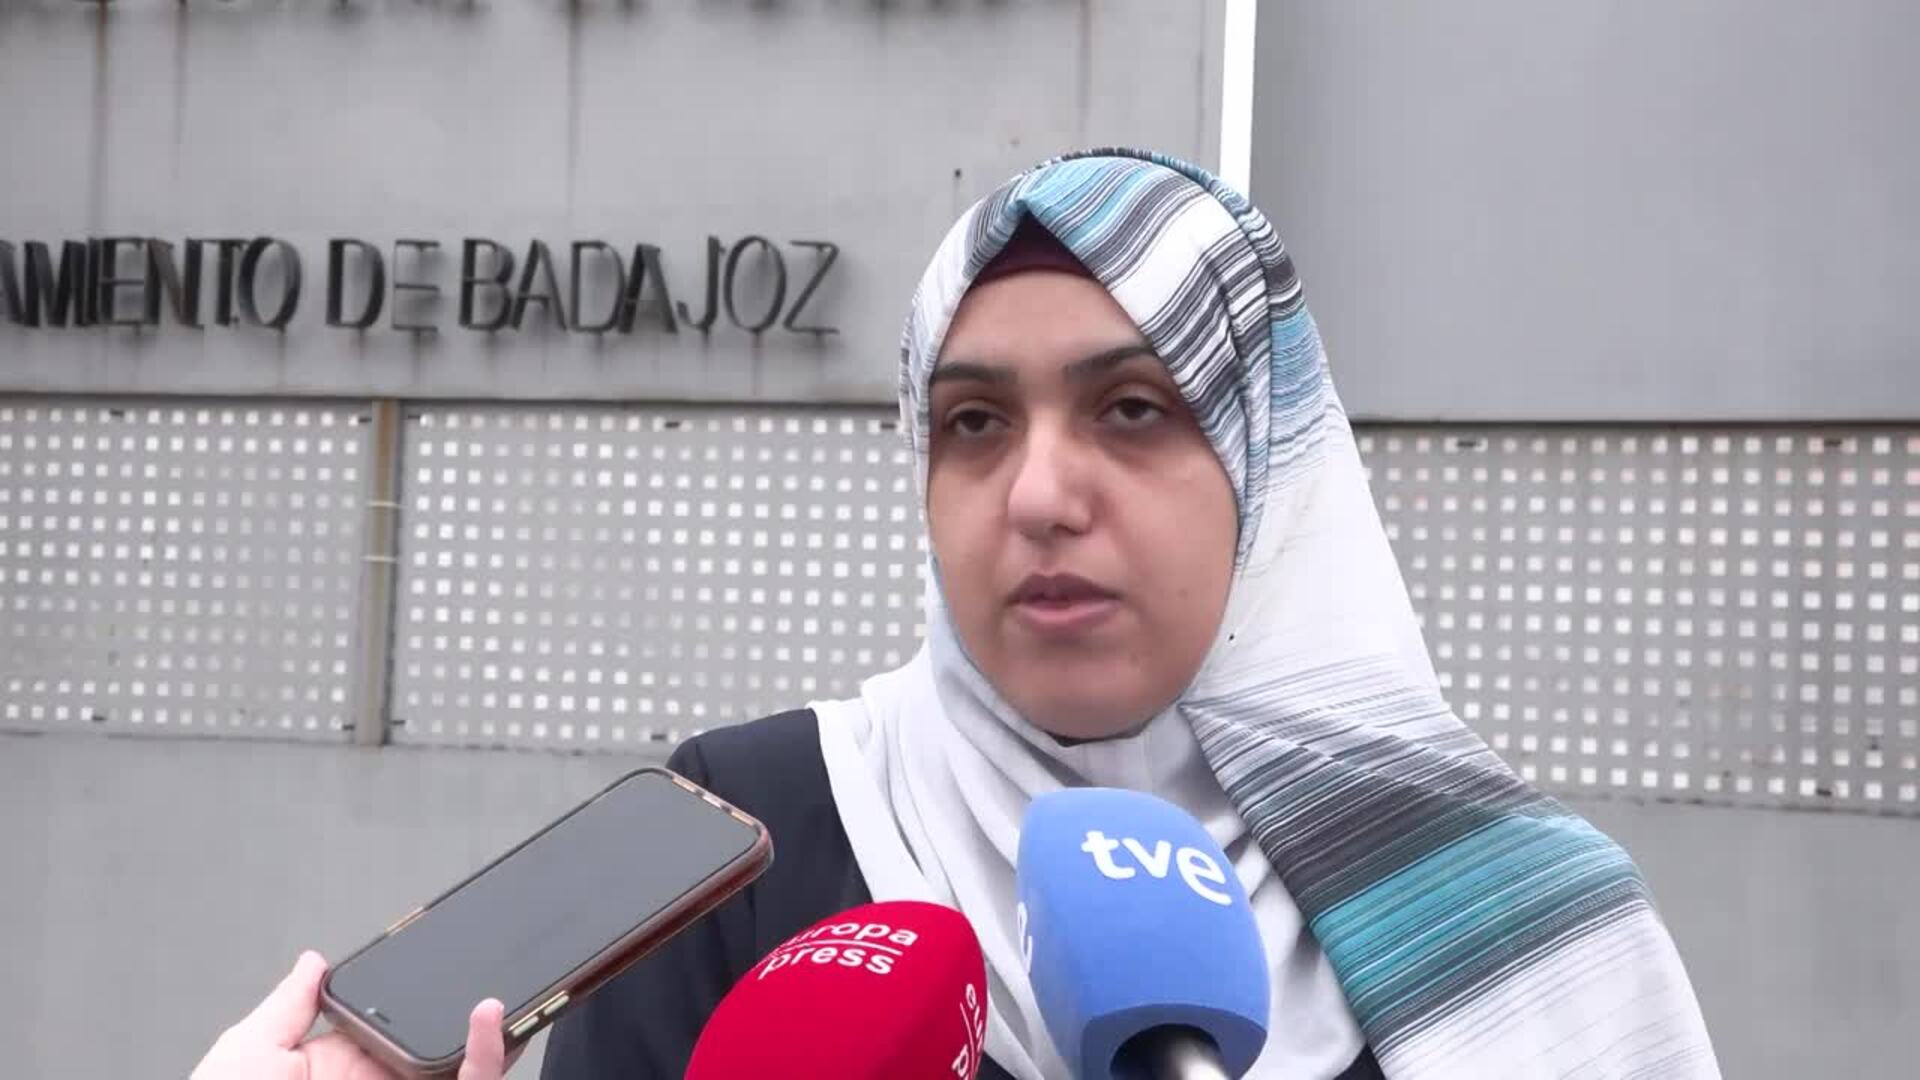 Hispano-palestinos en Badajoz: "No somos refugiados, somos españoles y tenemos derechos"